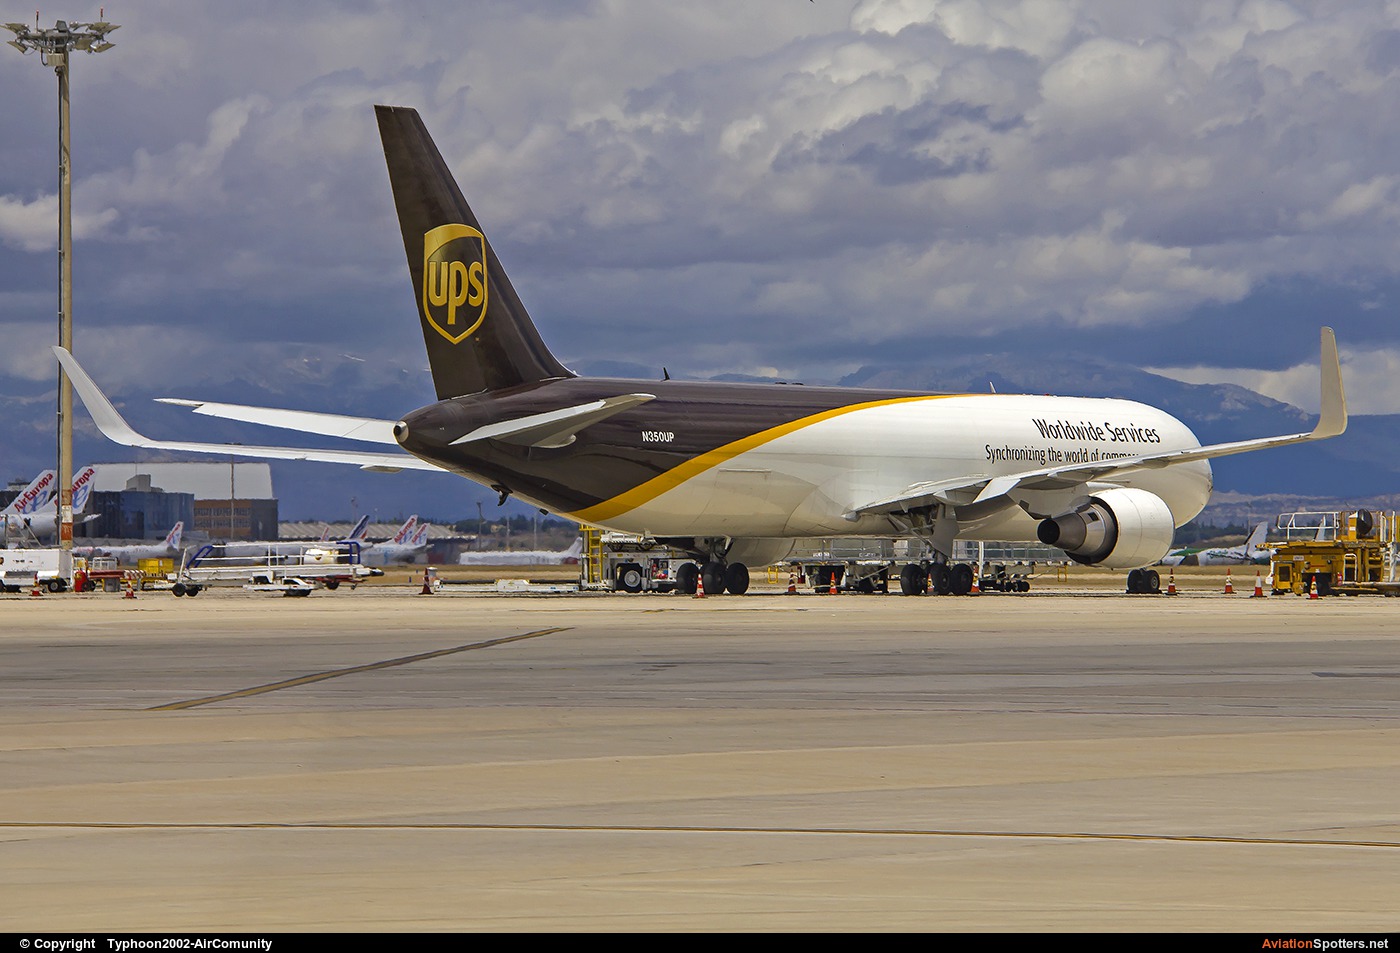 UPS - United Parcel Service  -  767-300ER  (N350UP) By Typhoon2002-AirComunity (AirComunity)